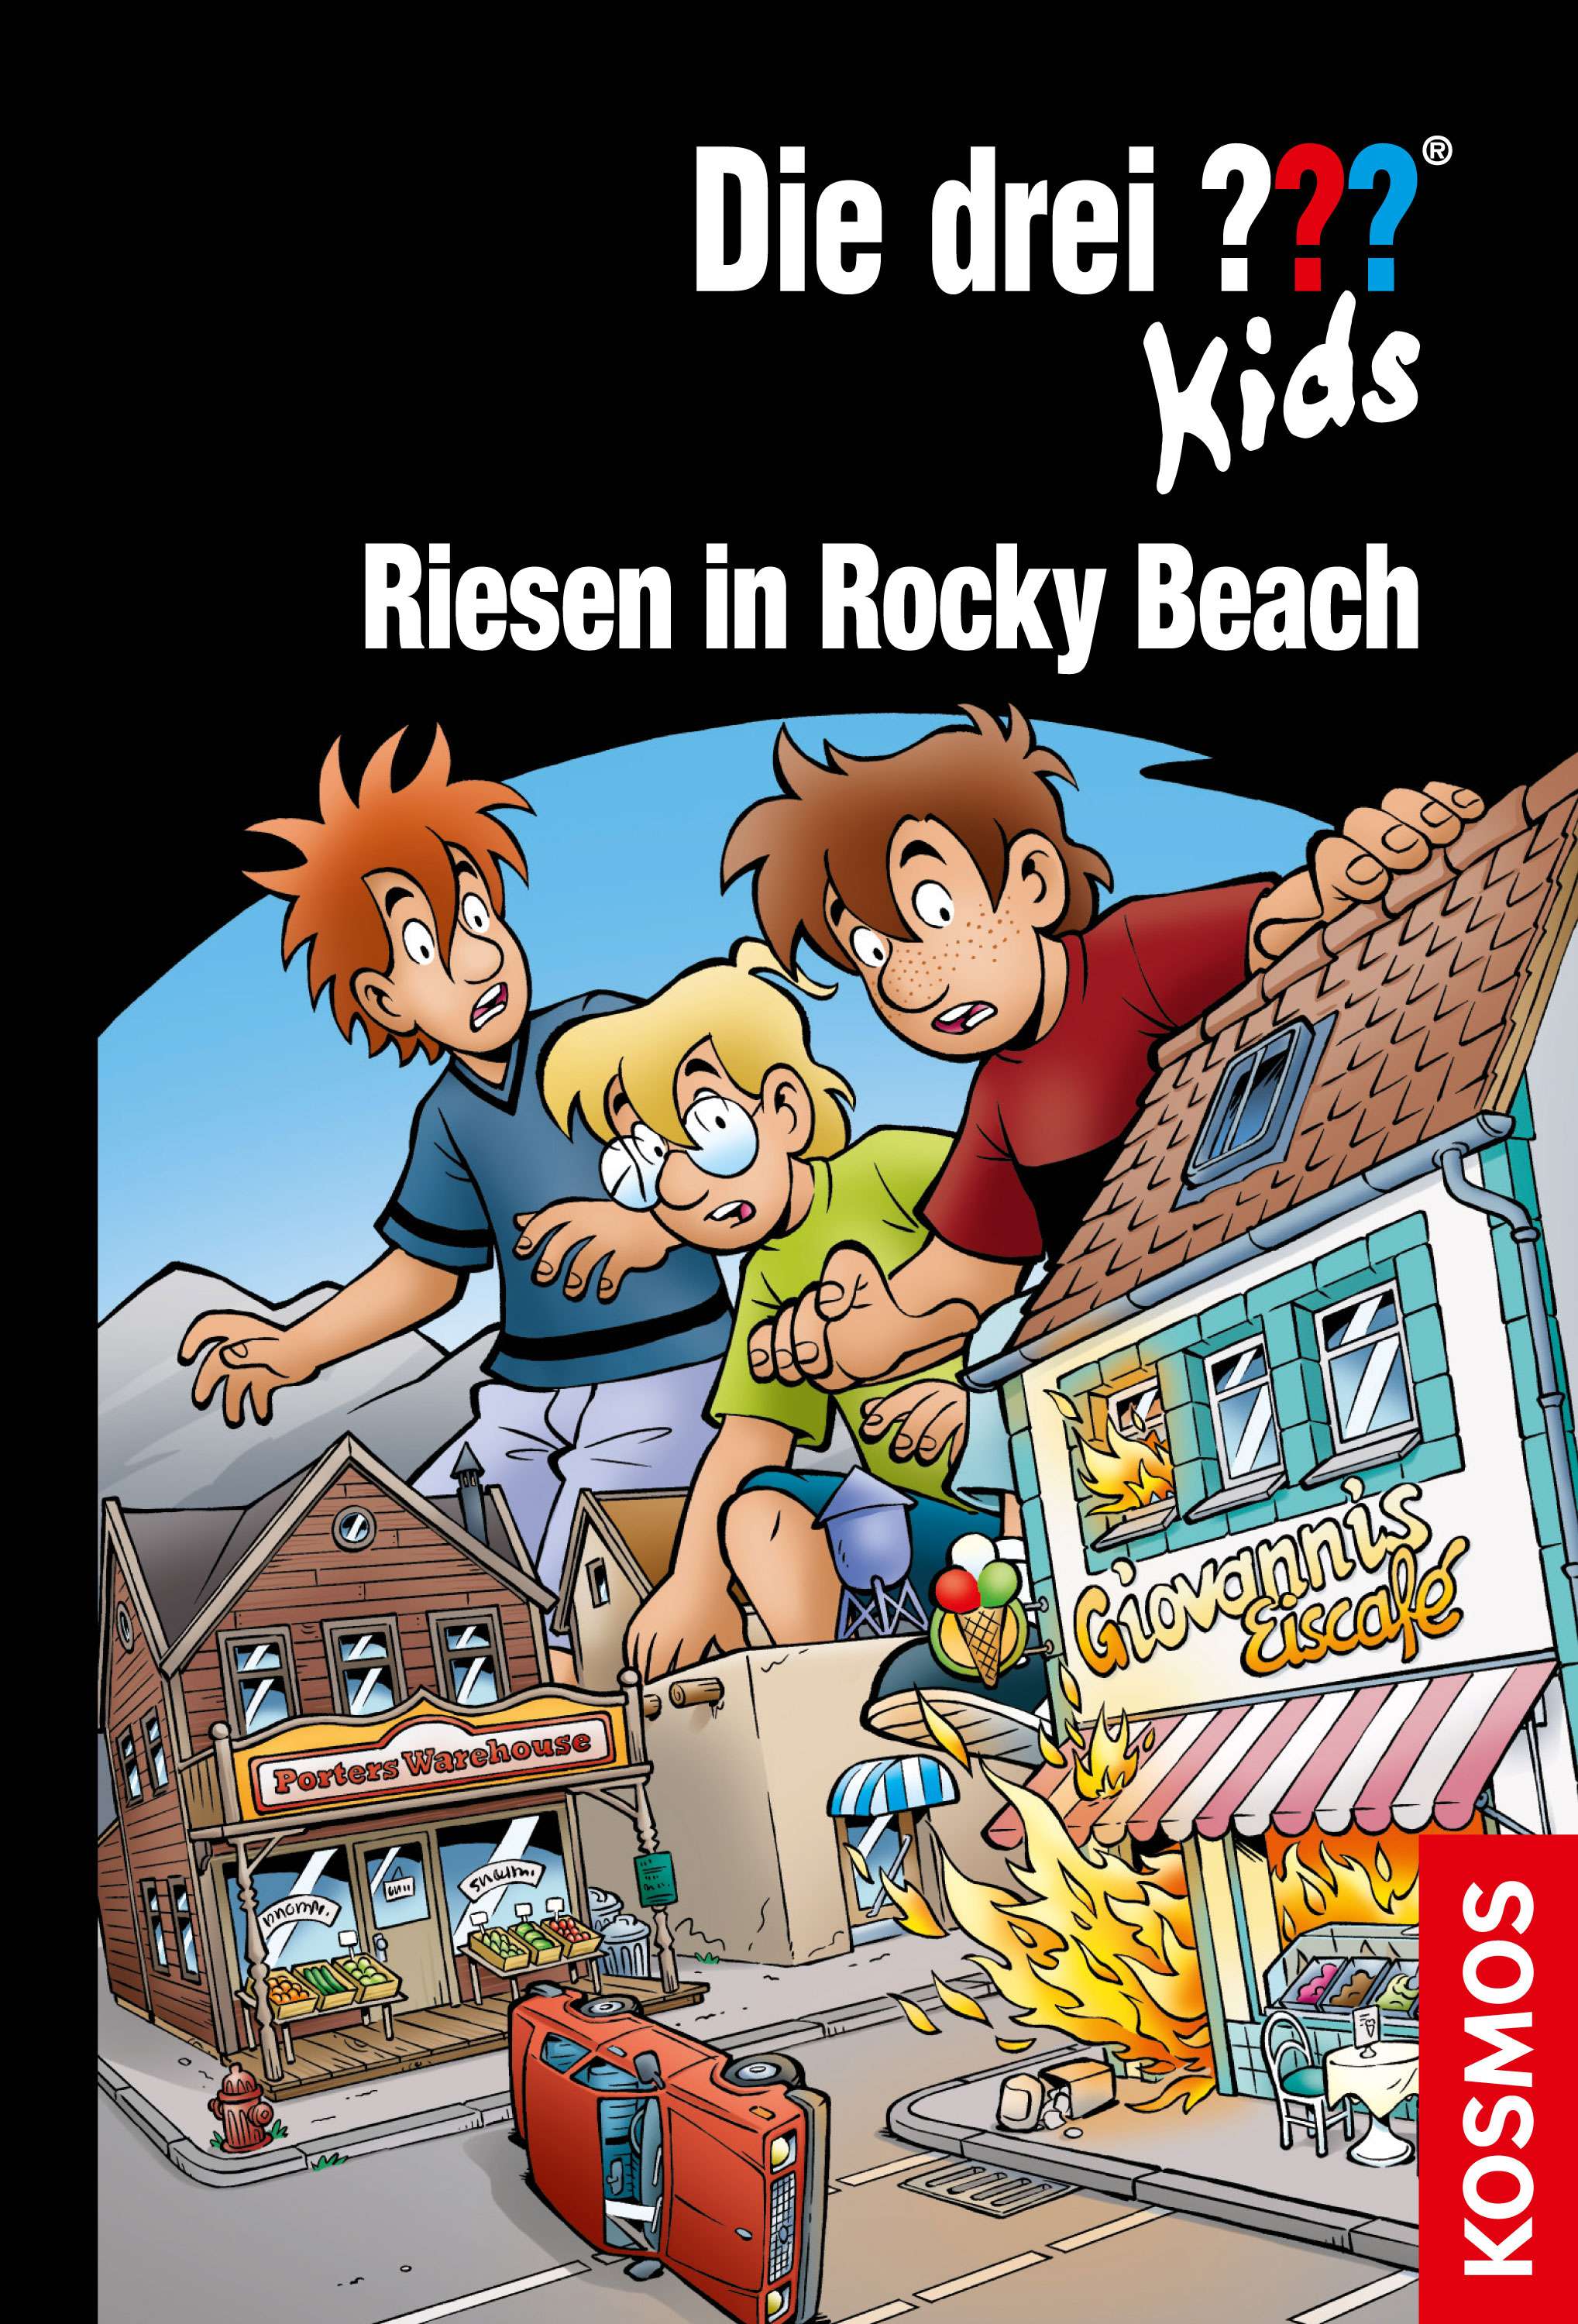 Die Drei ??? (Fragezeichen) Kids, Buch-Band 500: Die drei ??? Kids, 86, Riesen in Rocky Beach